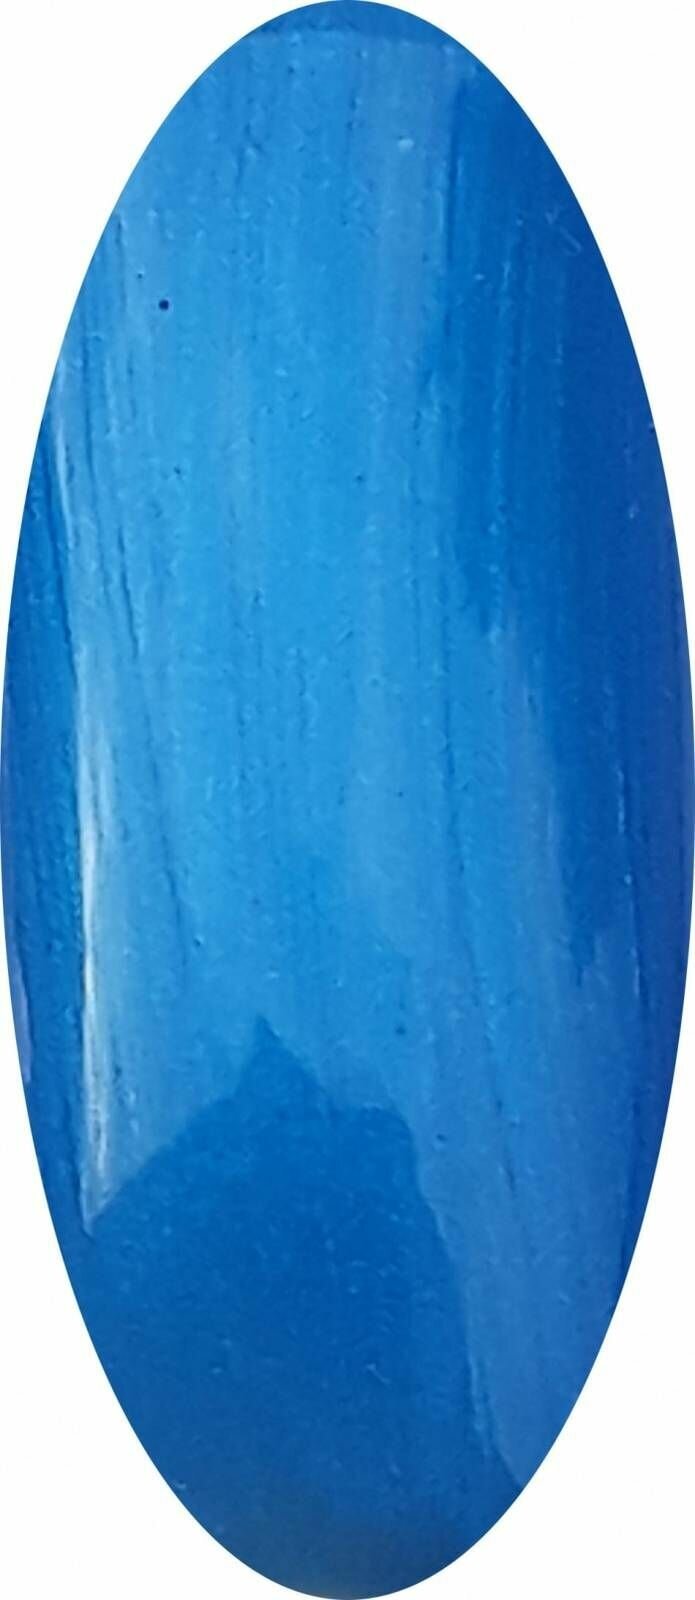 Гель-лак Ice Nova №163, перламутровый синий цвет, 5 мл, 1 шт